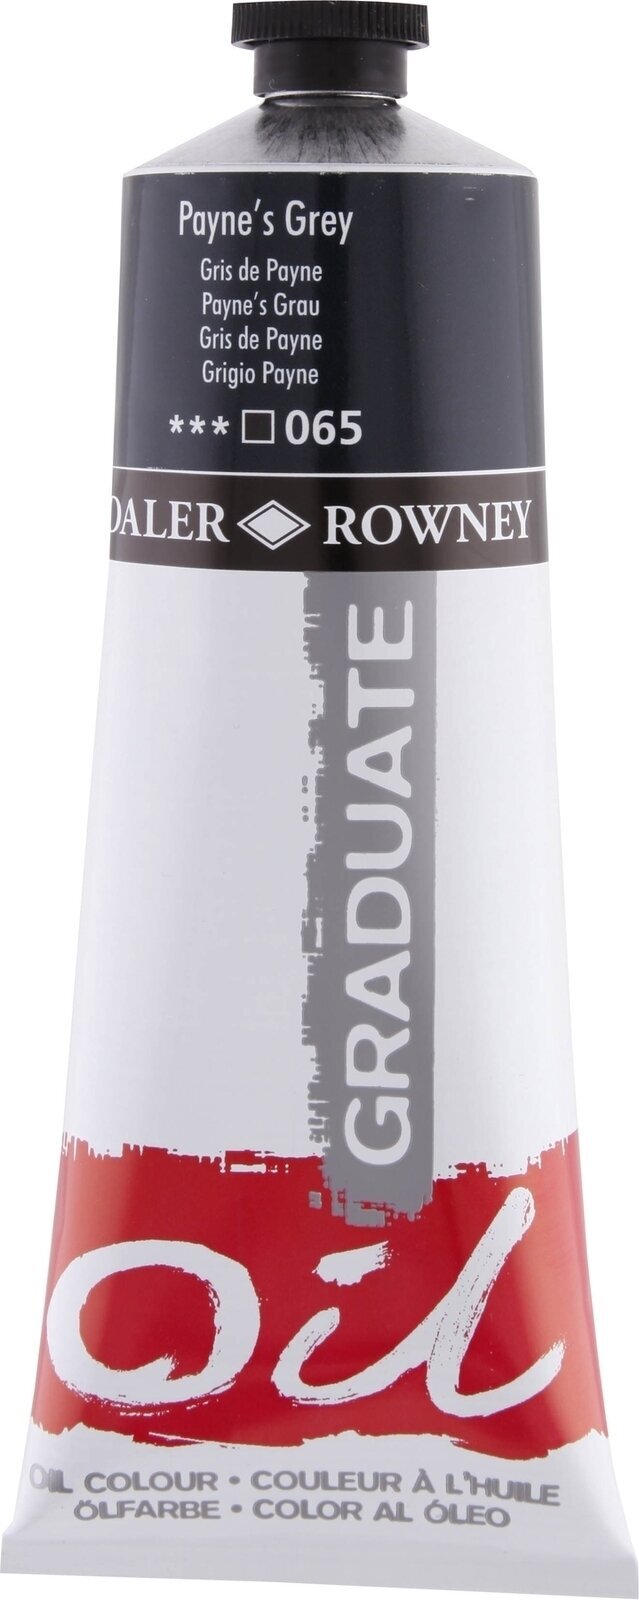 Aceite de colores Daler Rowney Graduate Oil Paint Payne's Grey 200 ml 1 pc